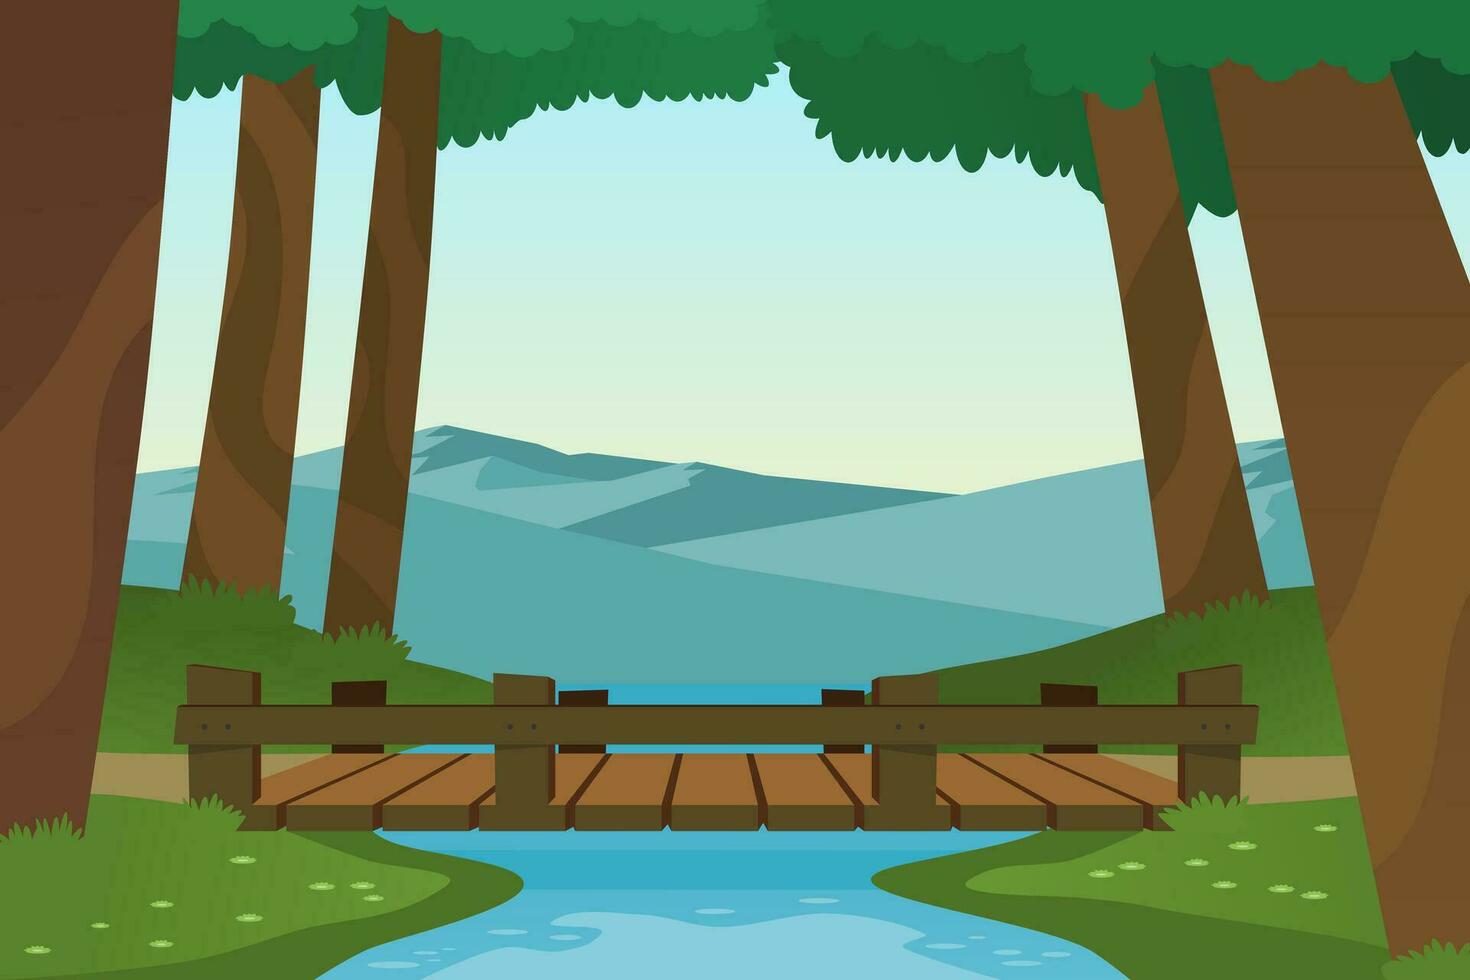 pequeño de madera puente en el bosque con pequeño río y montañas. vector ilustración.